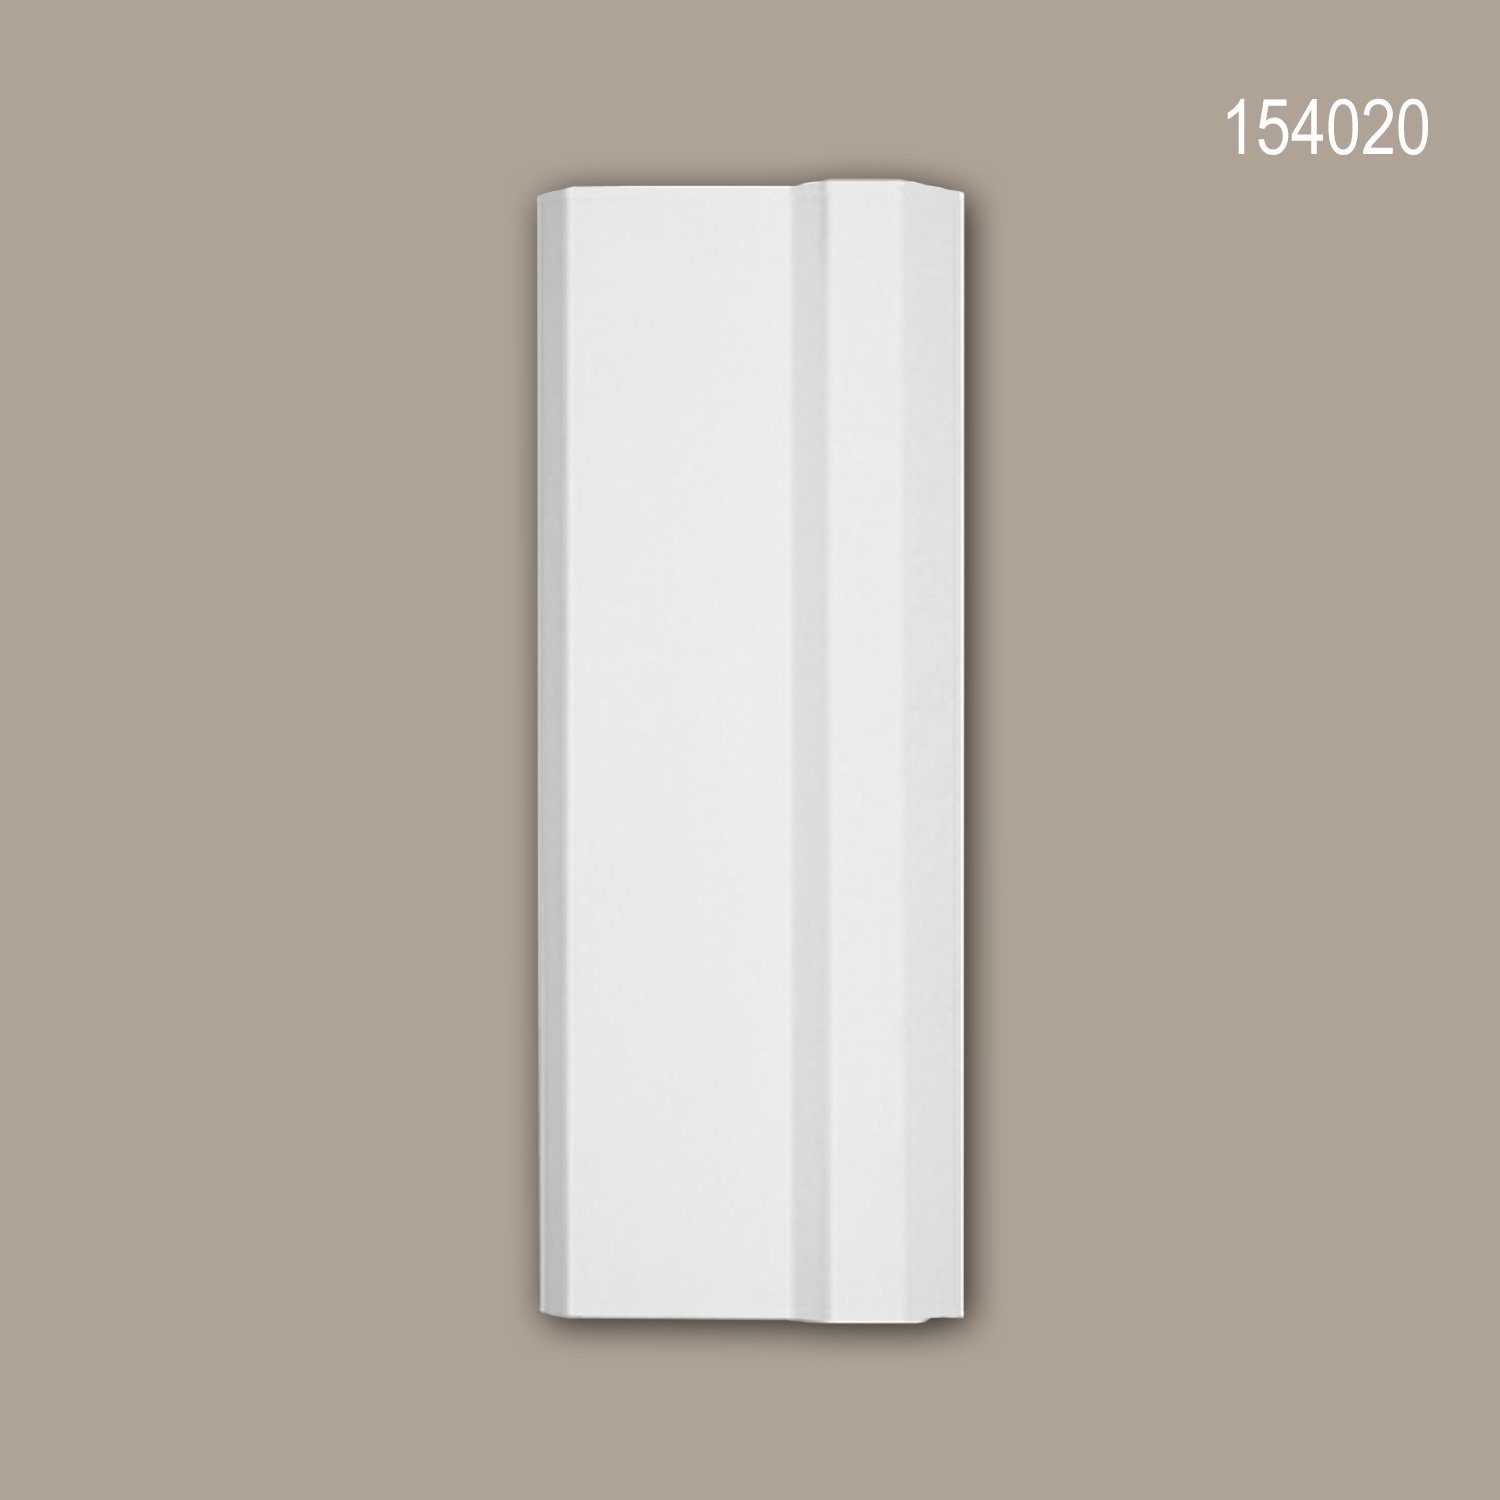 Profhome Wanddekoobjekt 154020 (Türumrandung Sockel, 1 St., Türdekoration, Stuckdekor, Dekorelement, Sockel, 25 x 9,5 cm), weiß, vorgrundiert, Stil: Zeitlos / Klassisch